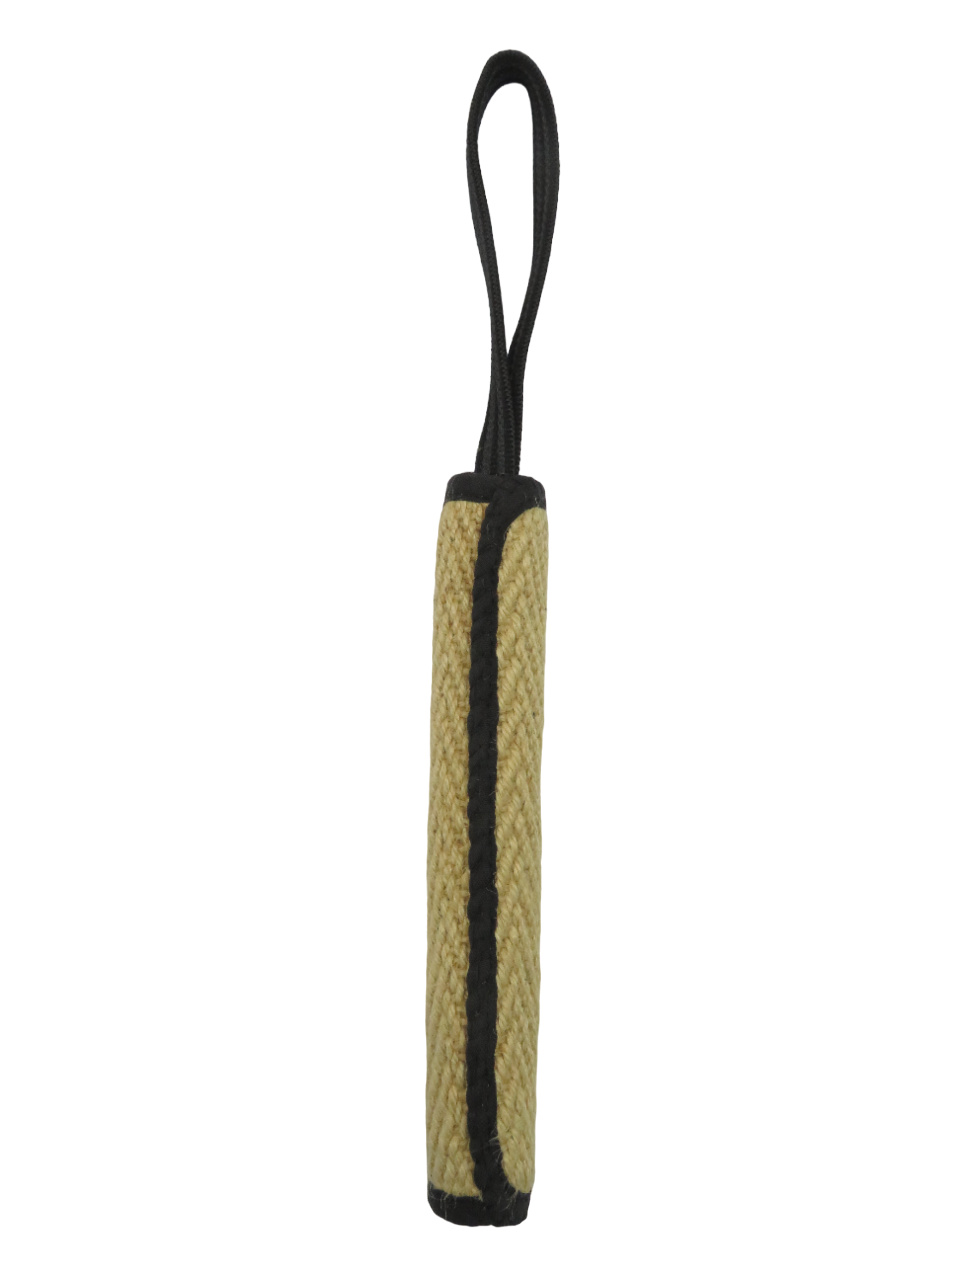 BOW WOW BOW WOW джутовая палка с 9-миллиметровой прорезиненной ручкой (натуральная) (120 г) bow wow bow wow джутовый круглый игровой рулон натуральный с ручкой 190 г